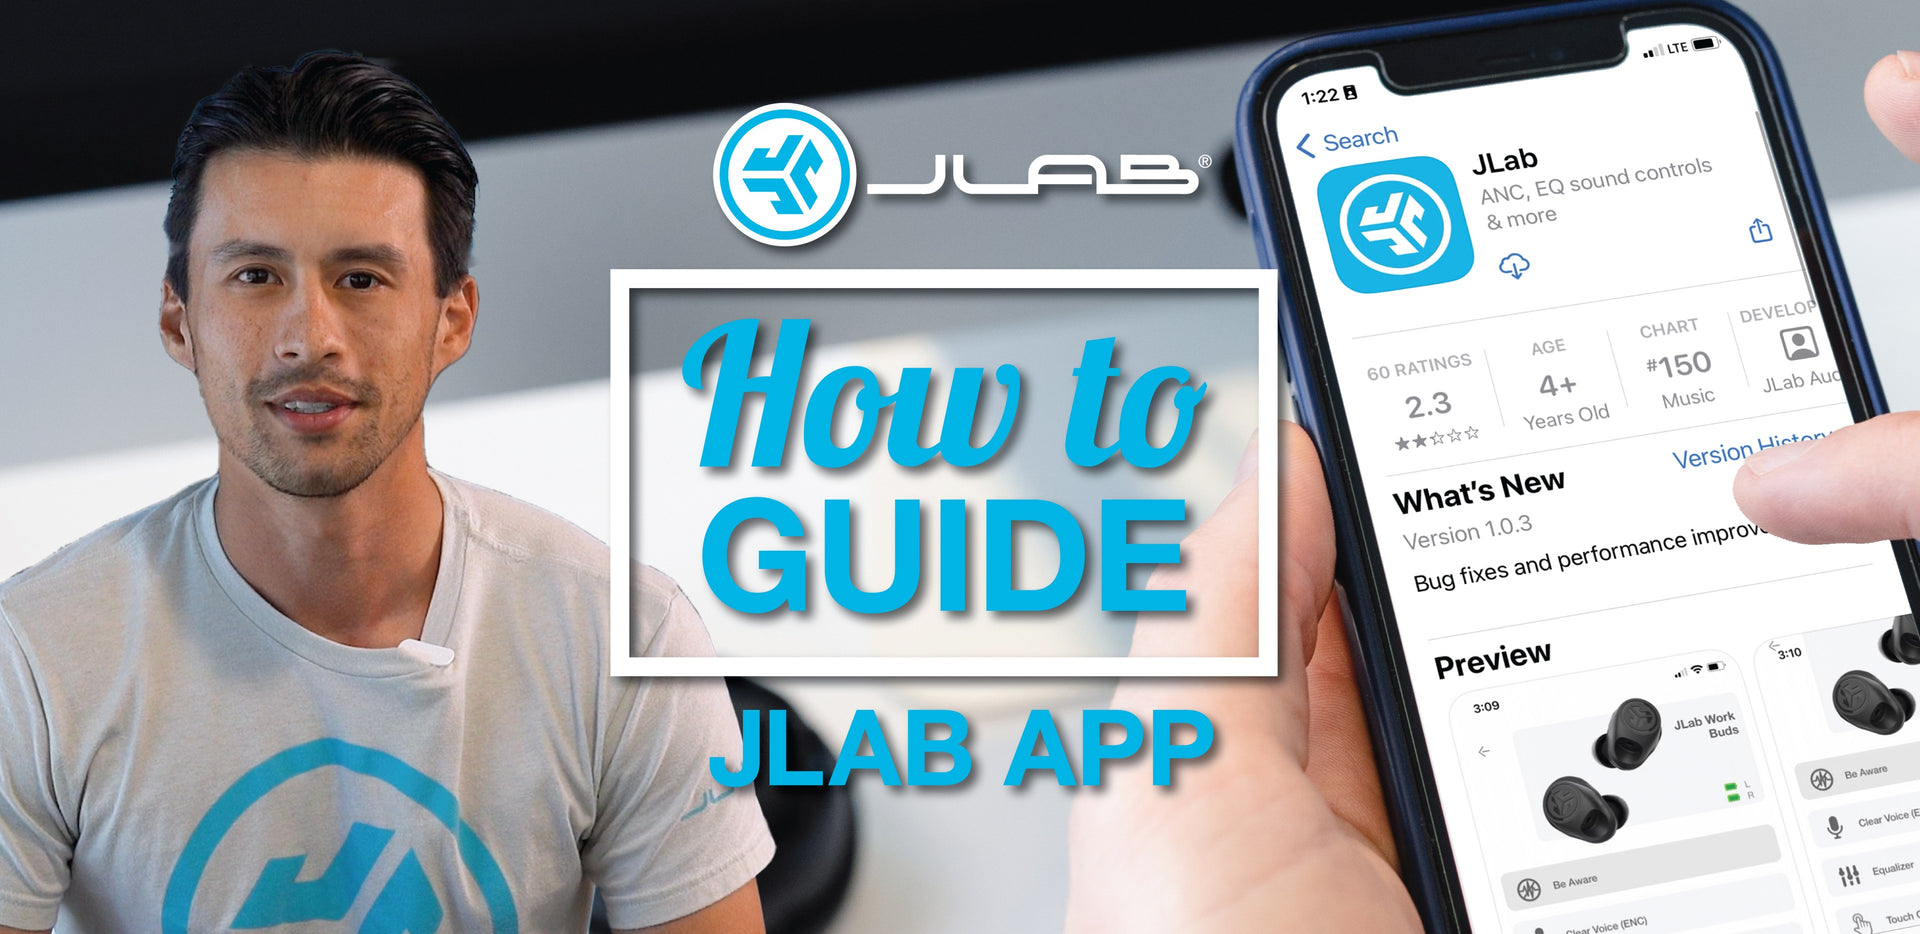 JLab App